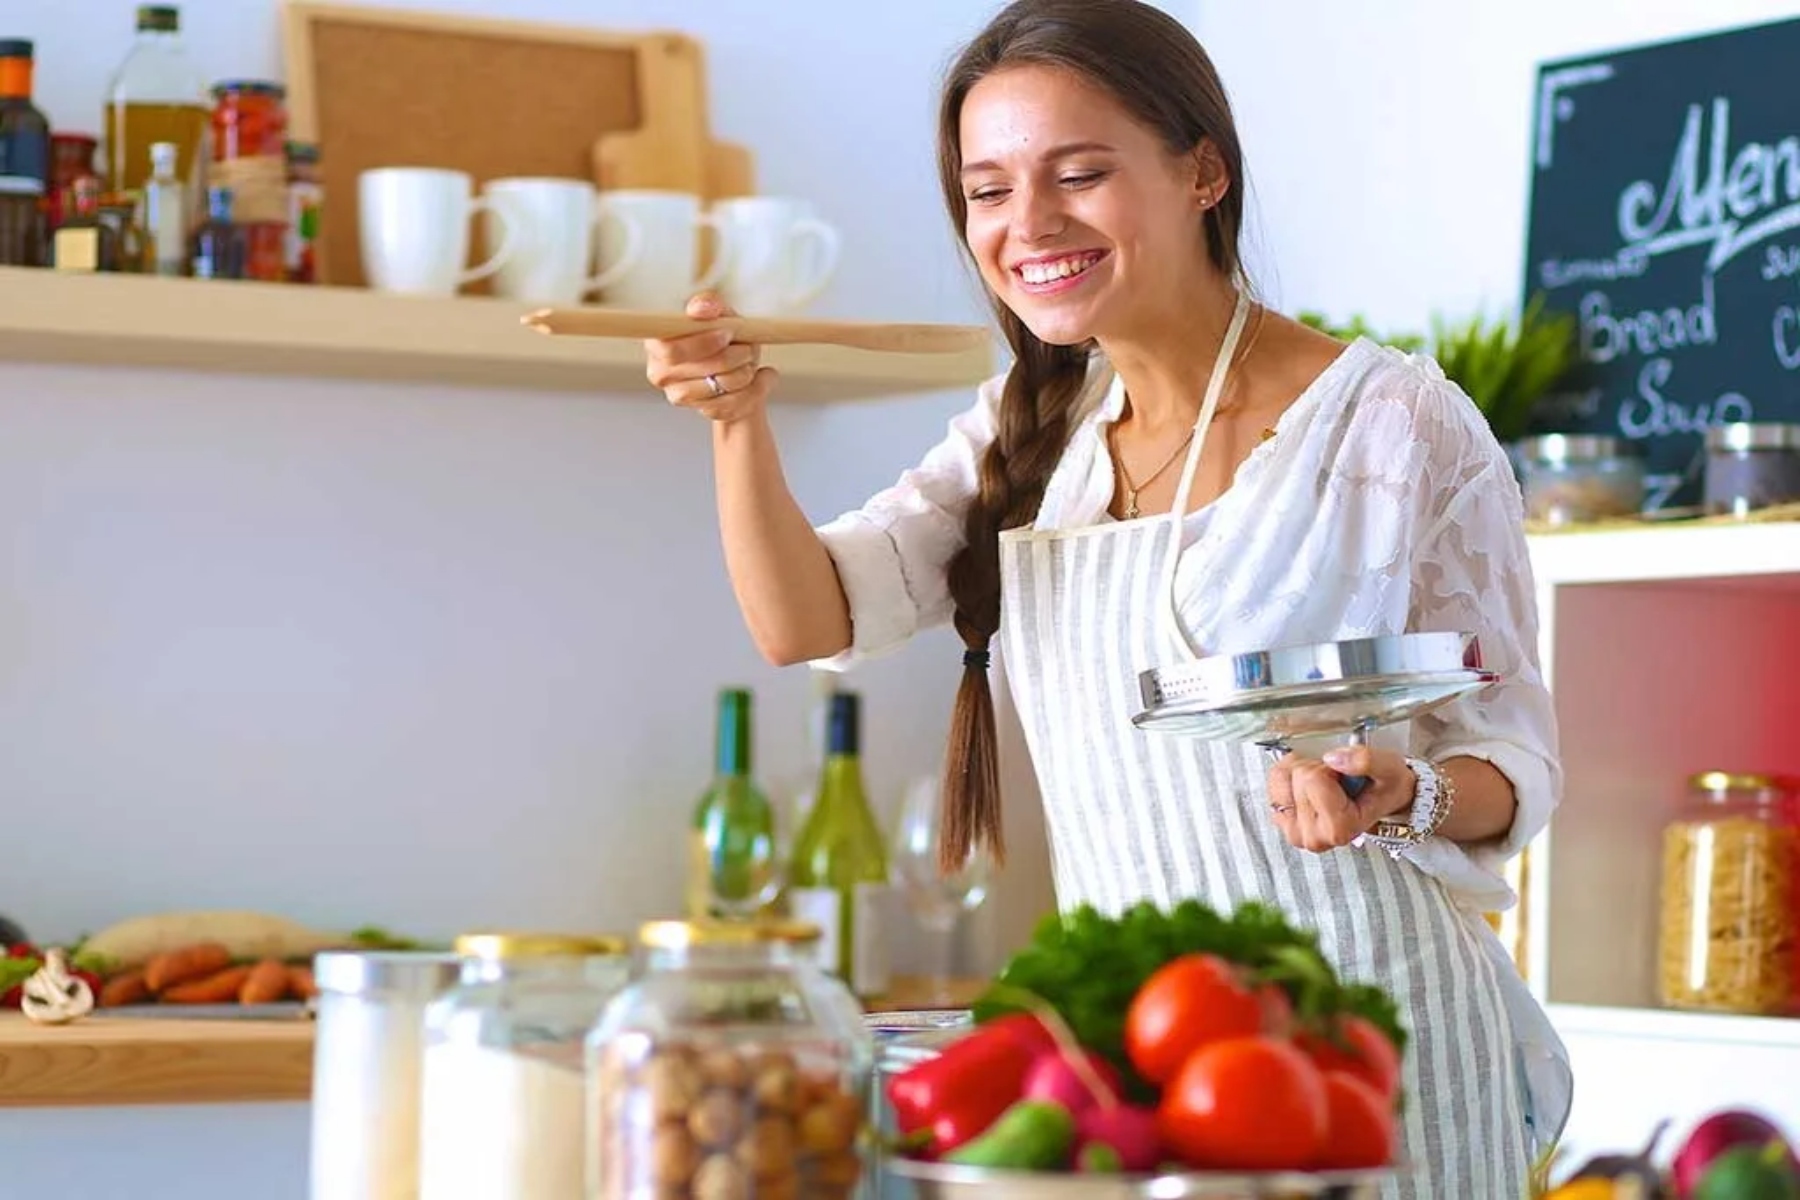 Μαγειρική υγιεινή: Ποιες είναι οι πιο υγιεινές τεχνικές μαγειρικής;